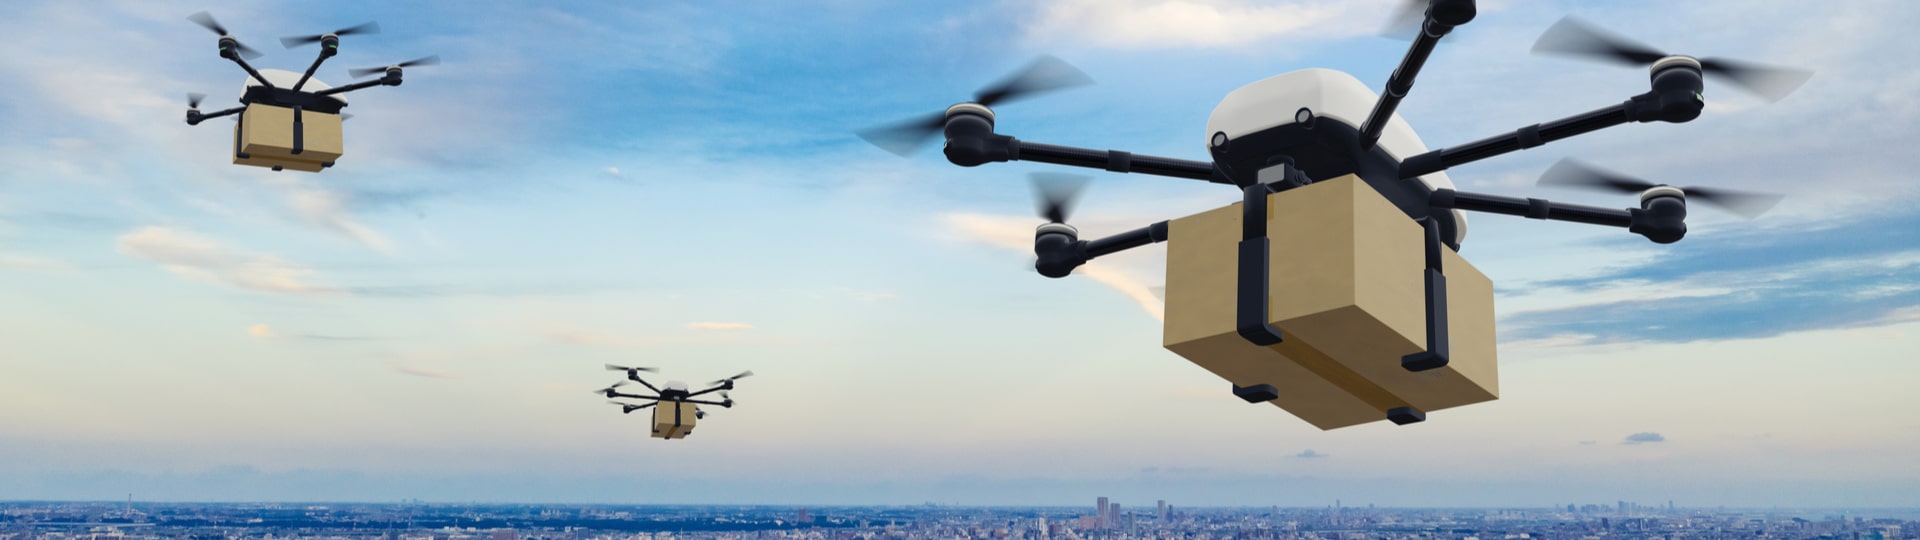 Amazon začne doručovat zásilky pomocí dronů